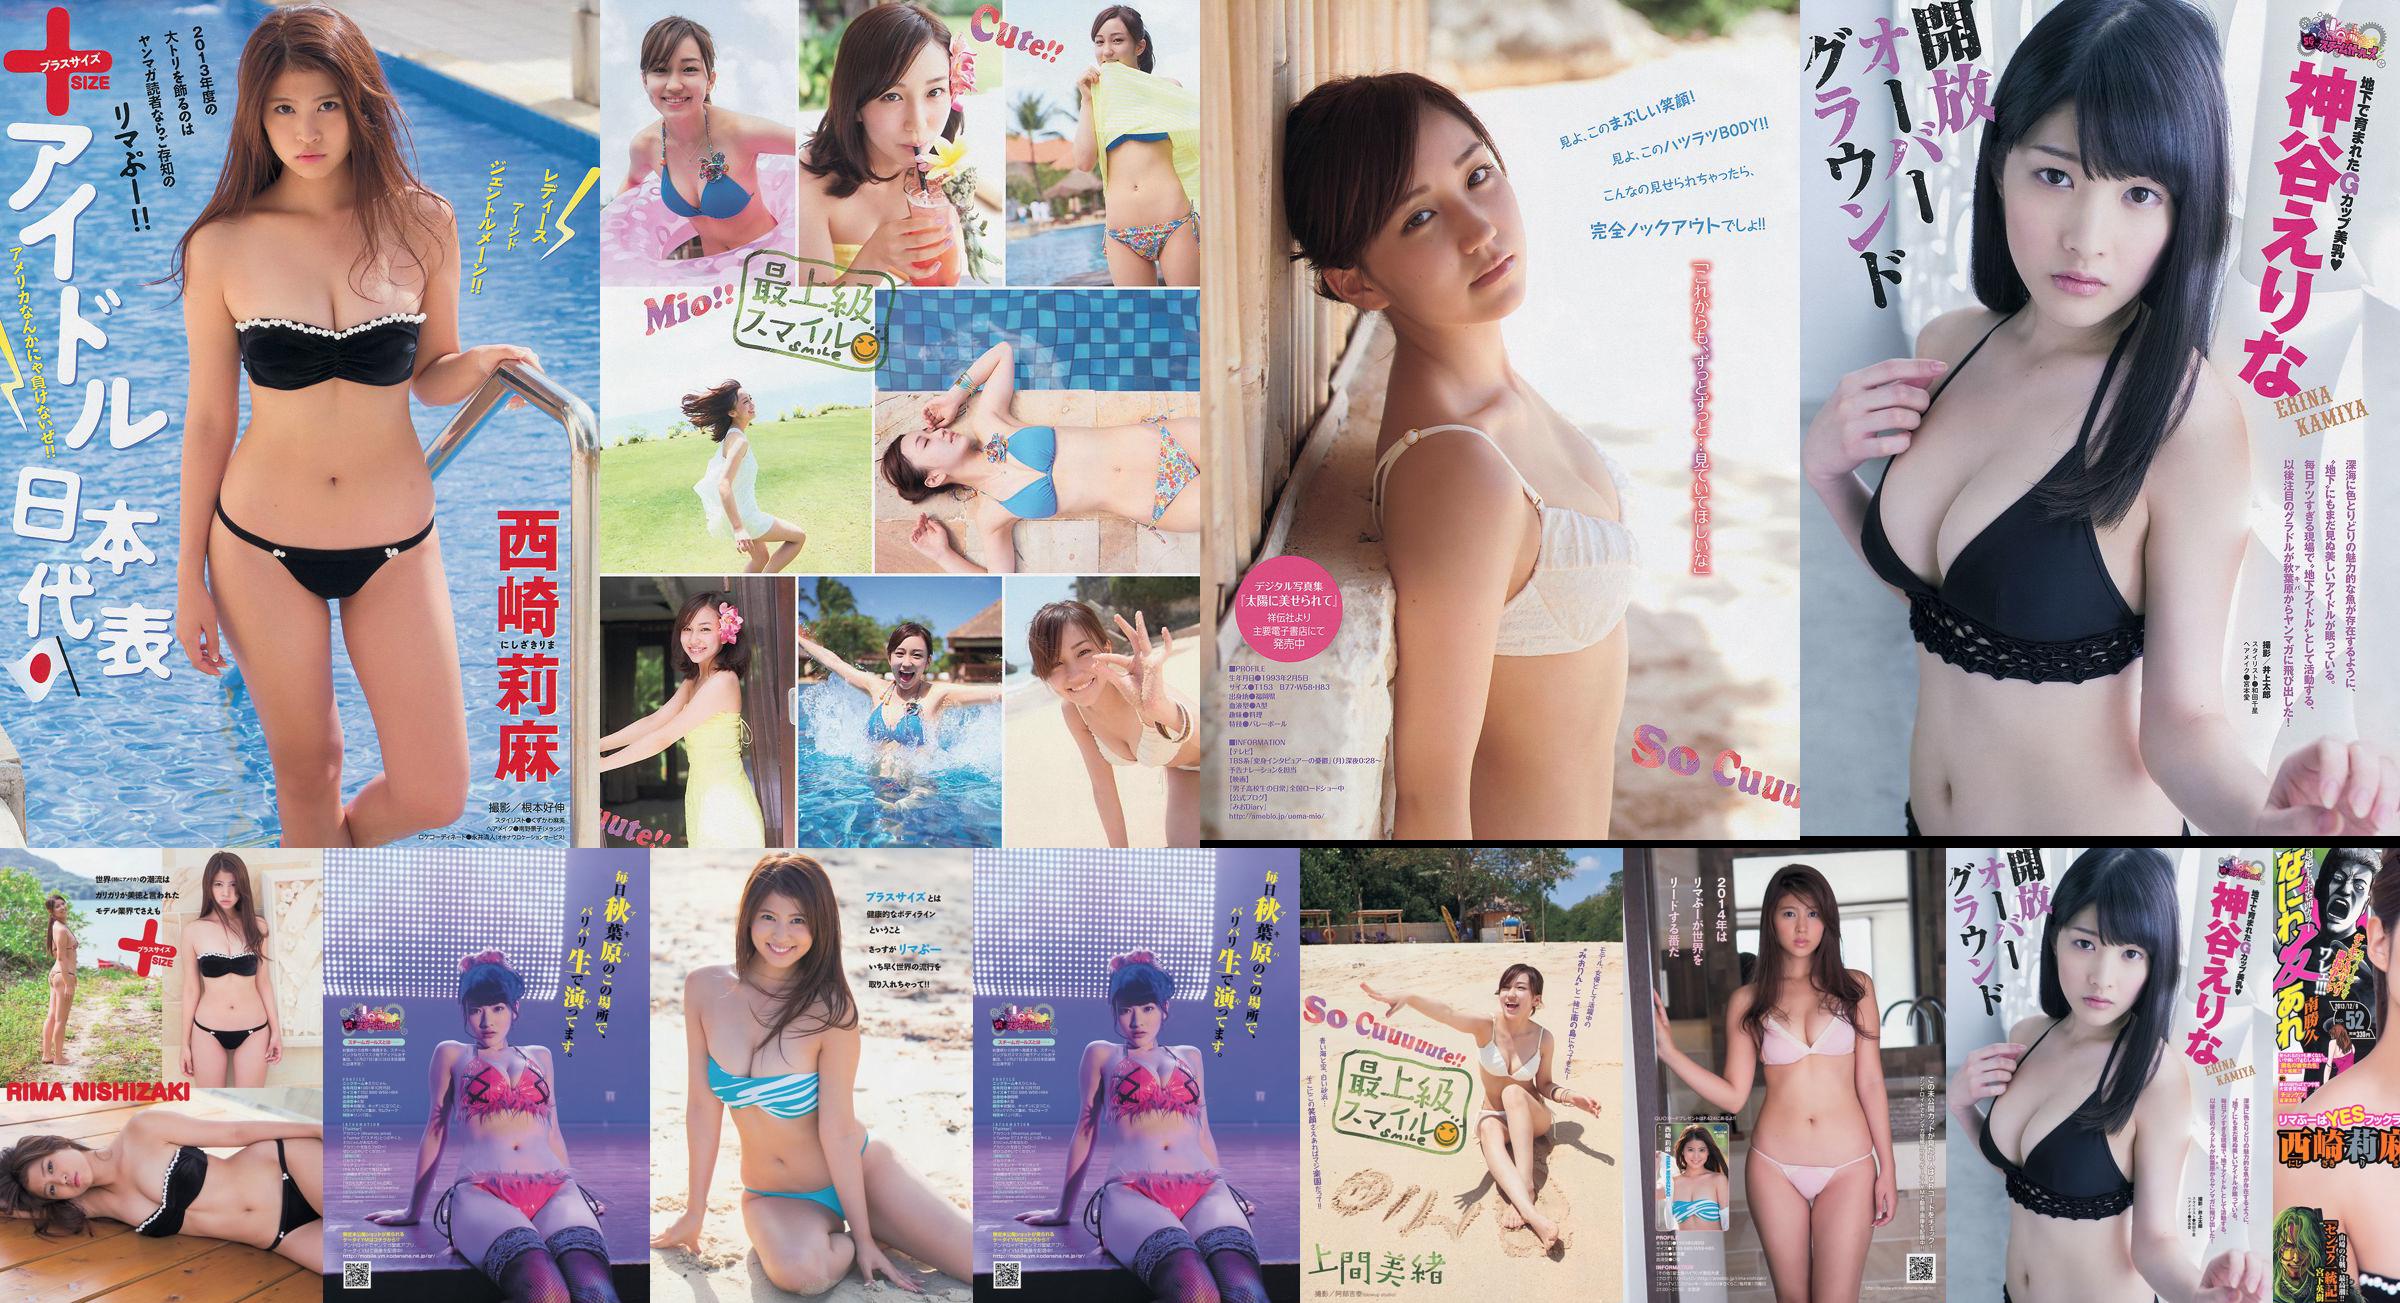 [Young Magazine] Rima Nishizaki Mio Uema Erina Kamiya 2013 No.52 Foto Moshi No.6789ce Pagina 1